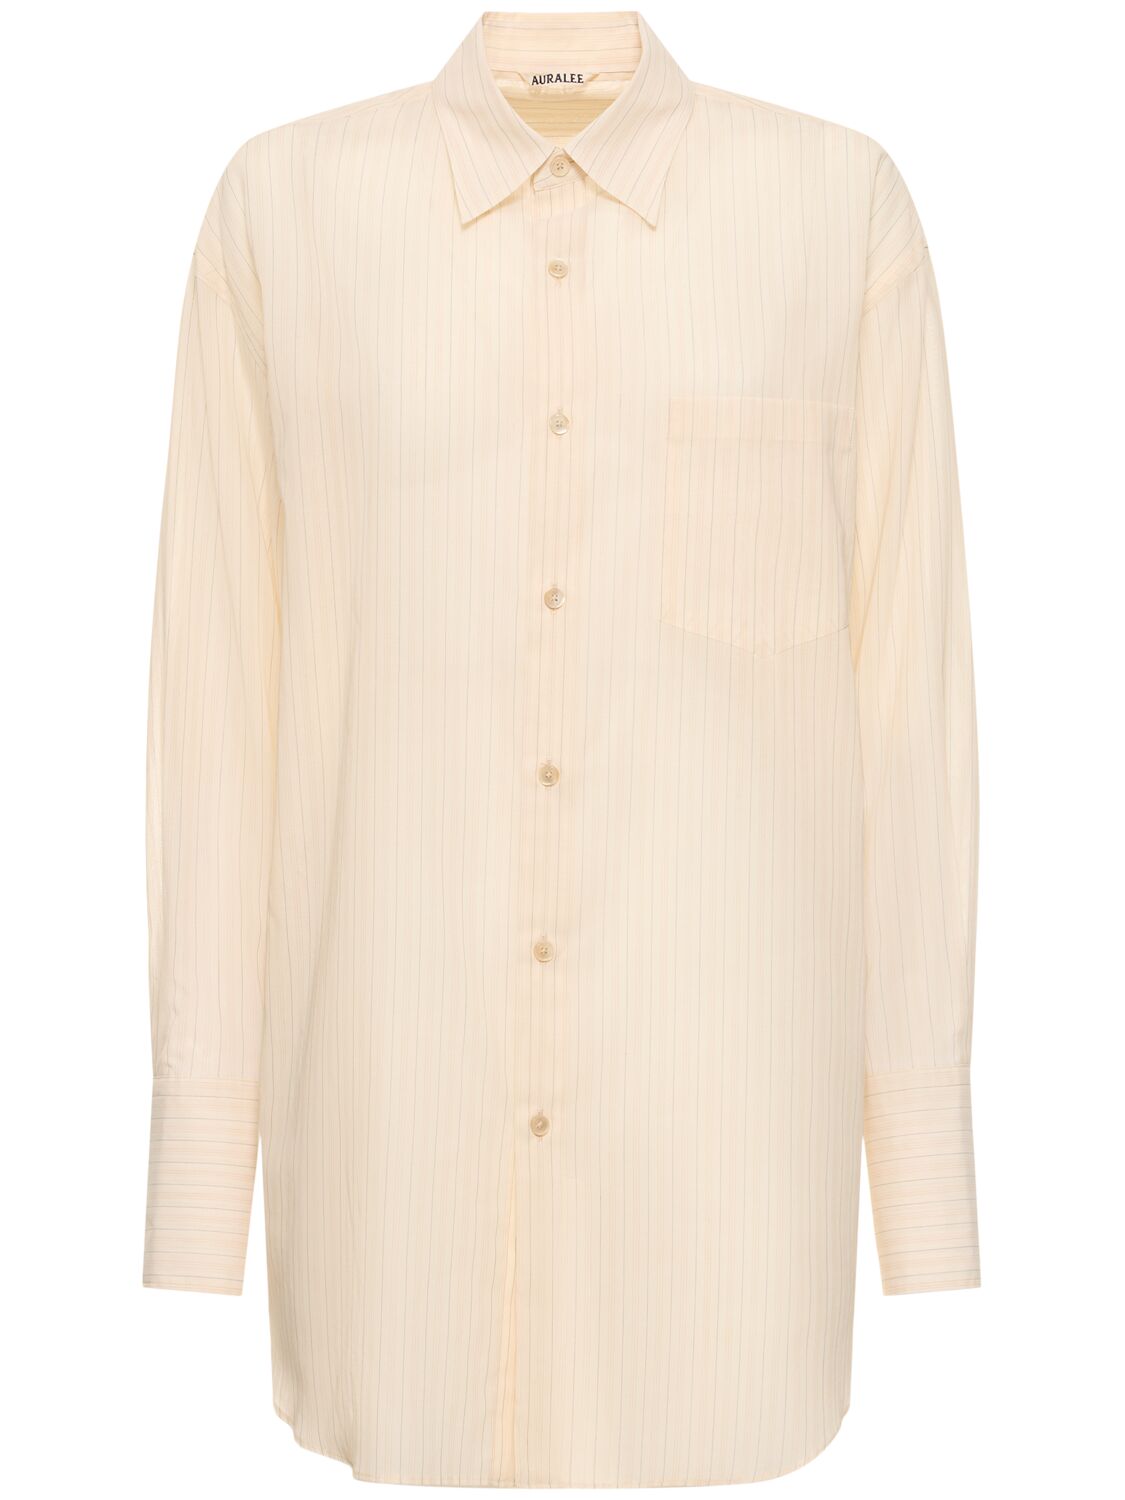 Auralee Striped Organza Cotton Shirt In Neutral